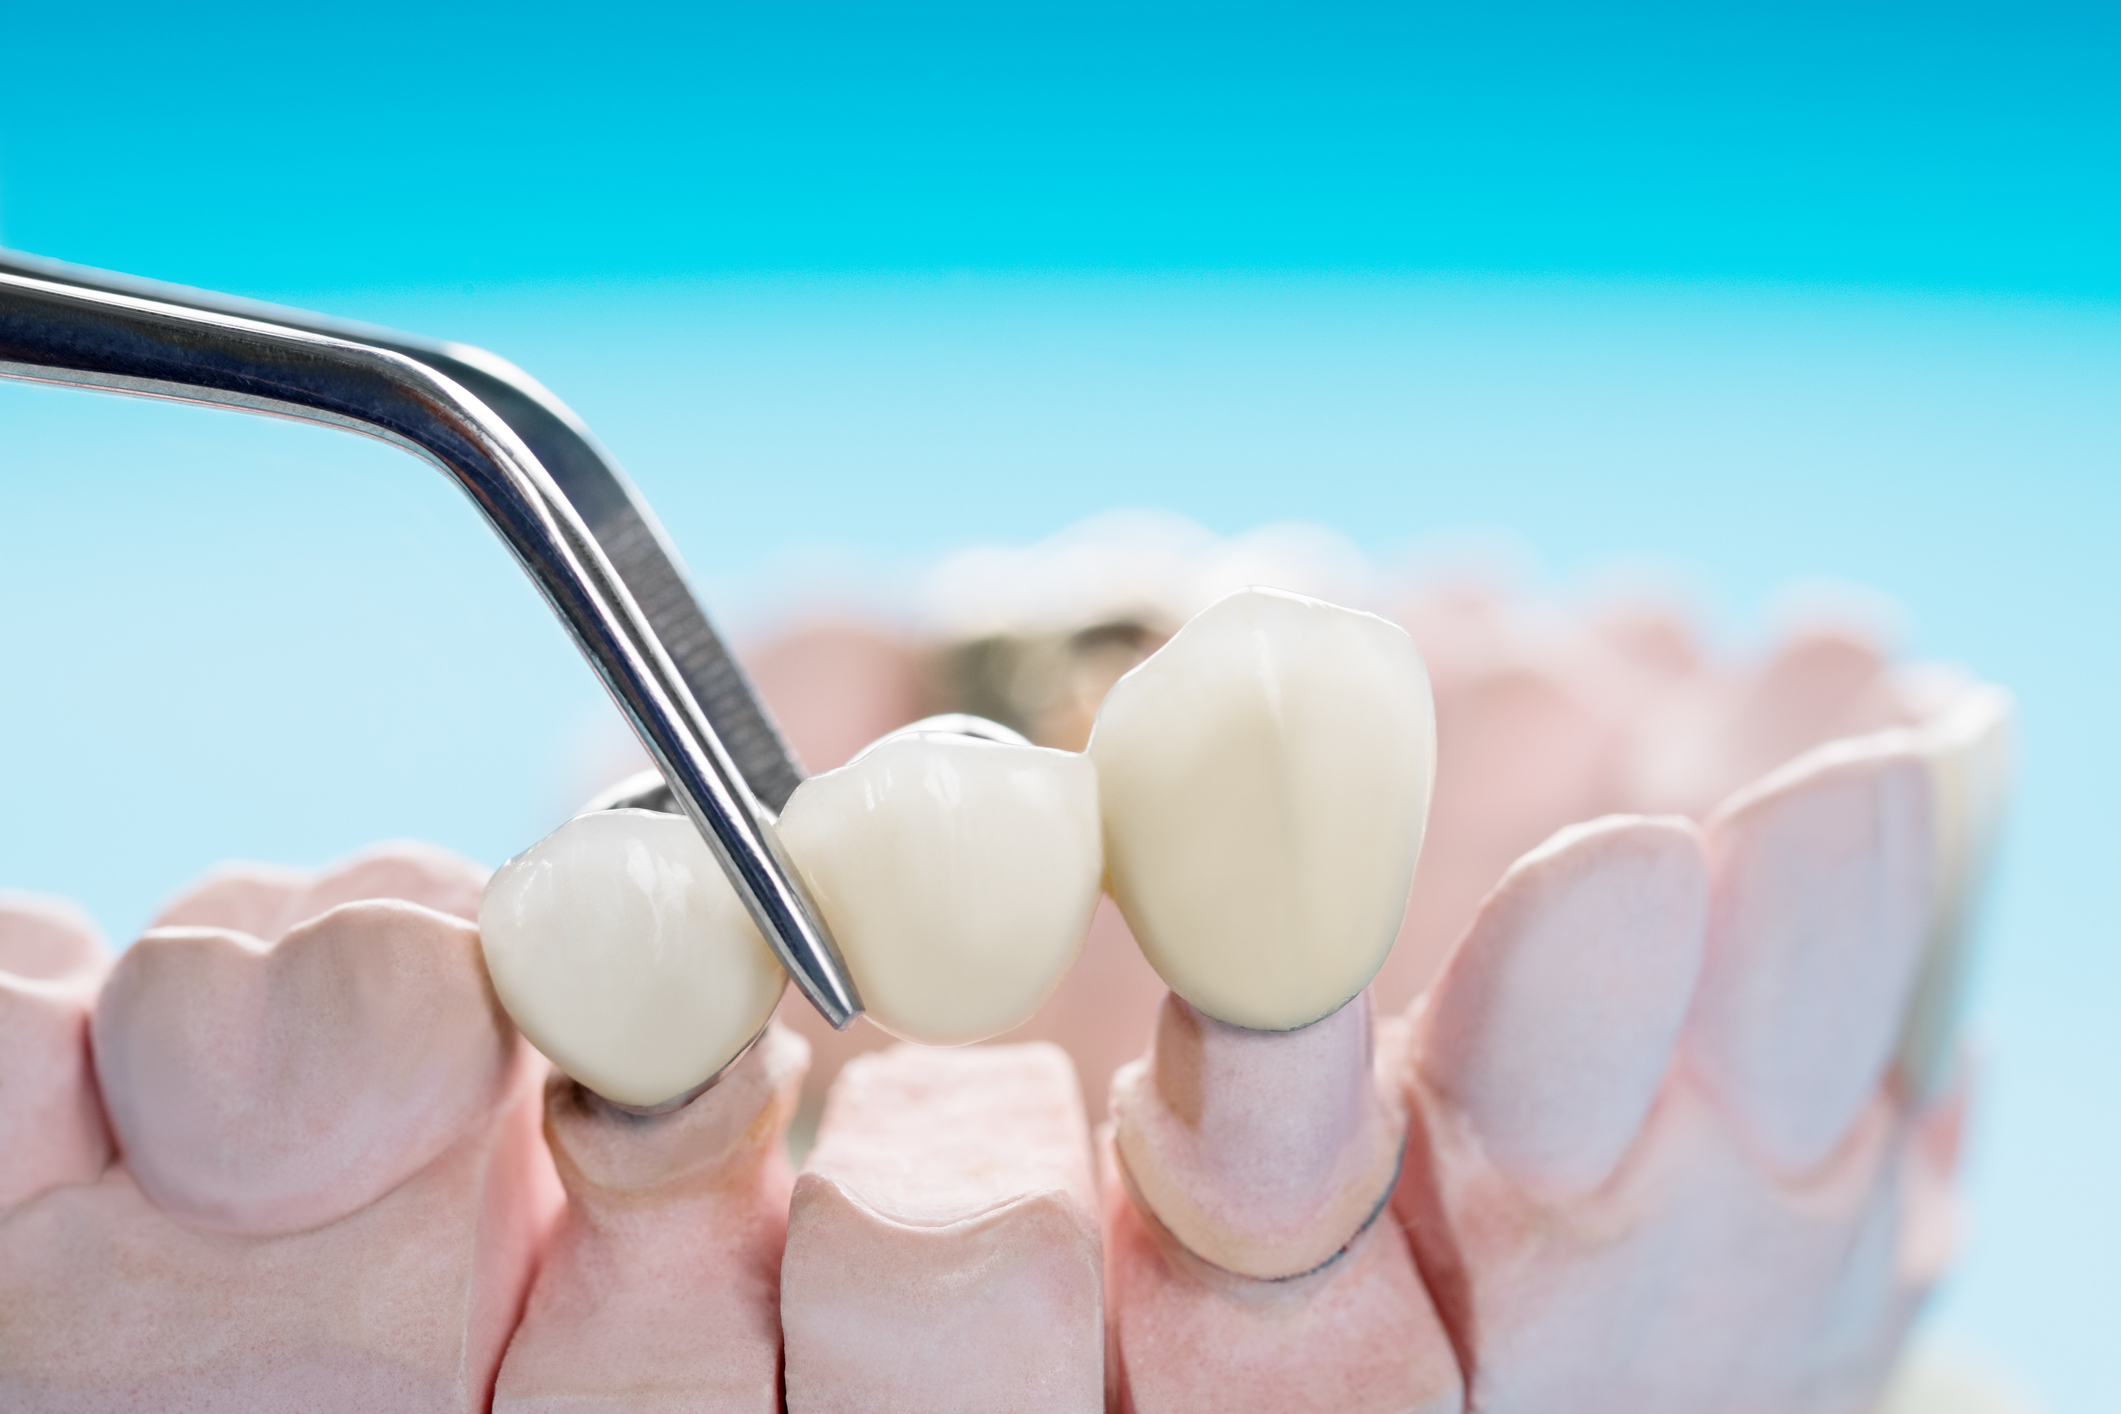 Prothèse dentaire fixe - Dentier, Bridge, Implant, Couronne - Prix et Usage